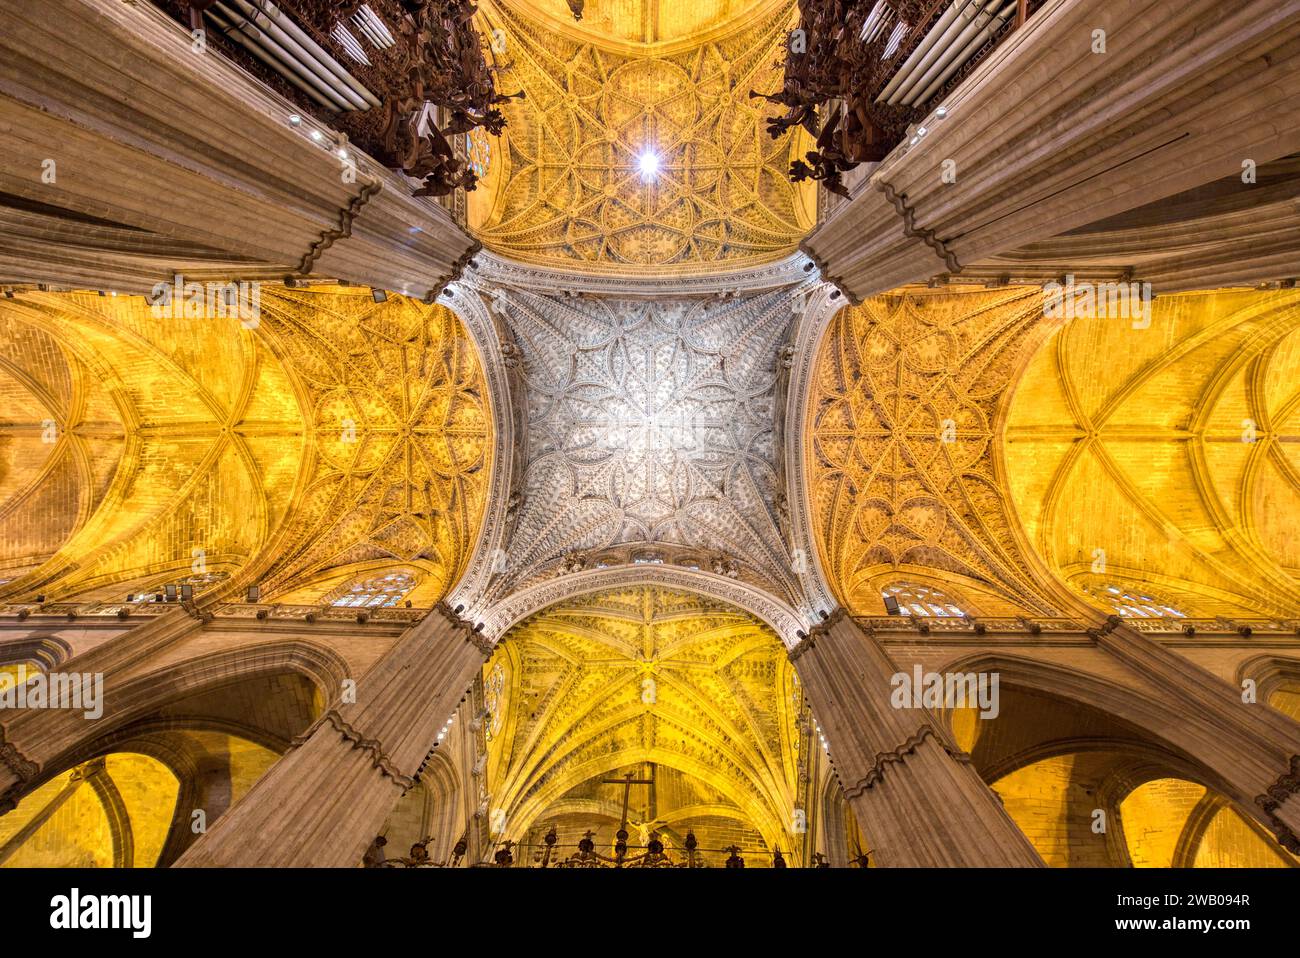 Le plafond orné et les arches de la cathédrale de Séville. La cathédrale du 15e siècle est classée au patrimoine mondial de l'UNESCO Banque D'Images